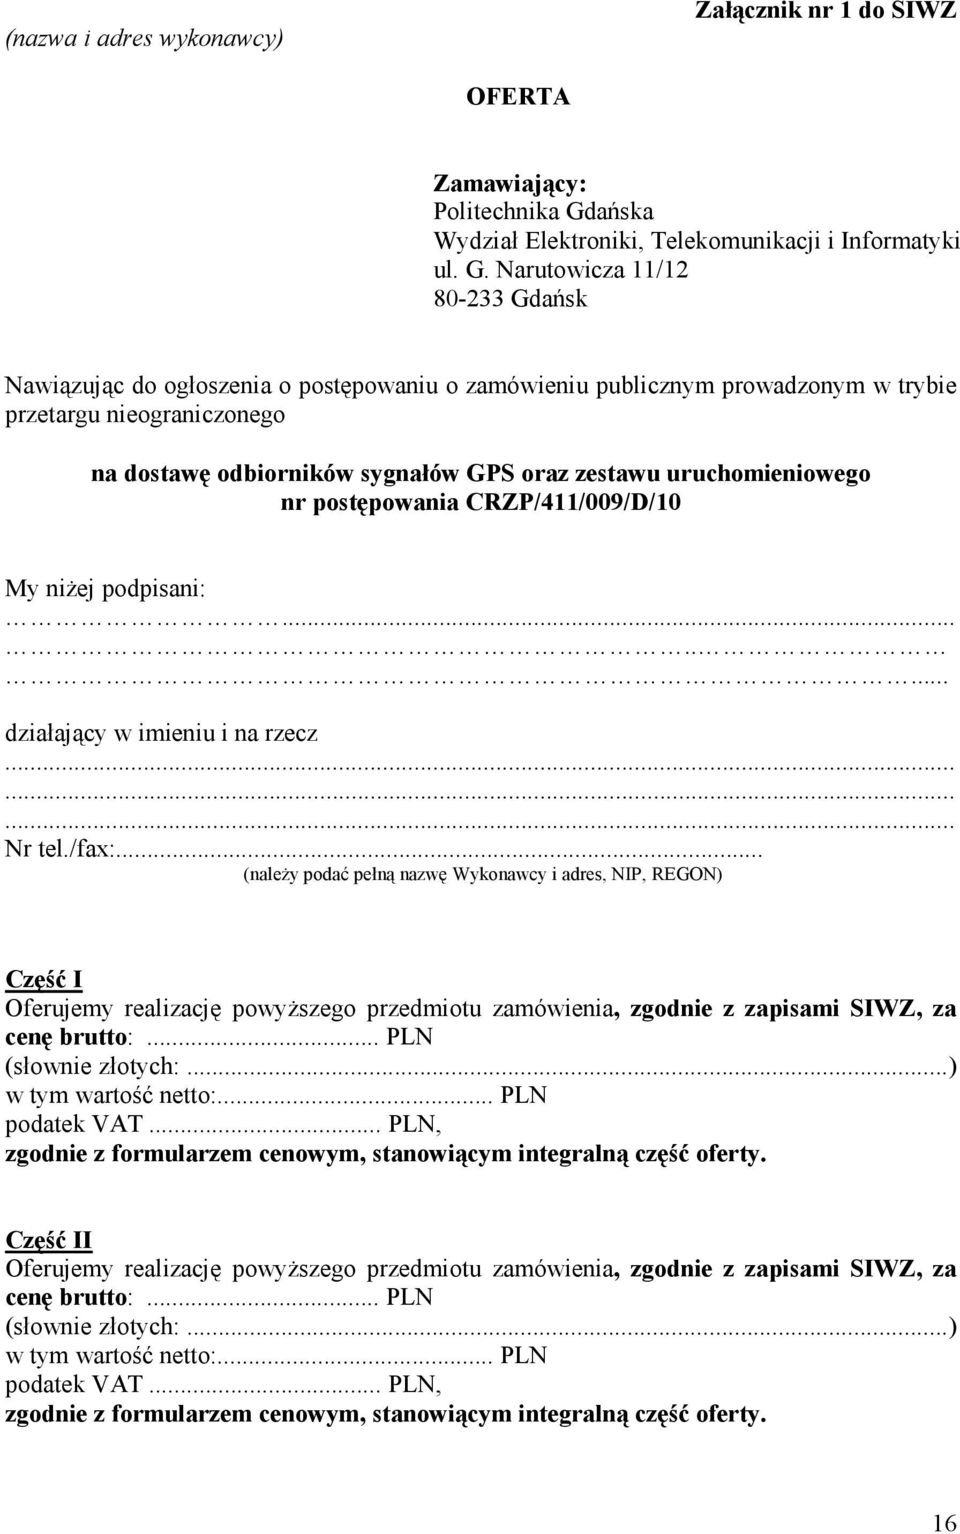 Narutowicza 11/12 80-233 Gdańsk Nawiązując do ogłoszenia o postępowaniu o zamówieniu publicznym prowadzonym w trybie przetargu nieograniczonego na dostawę odbiorników sygnałów GPS oraz zestawu